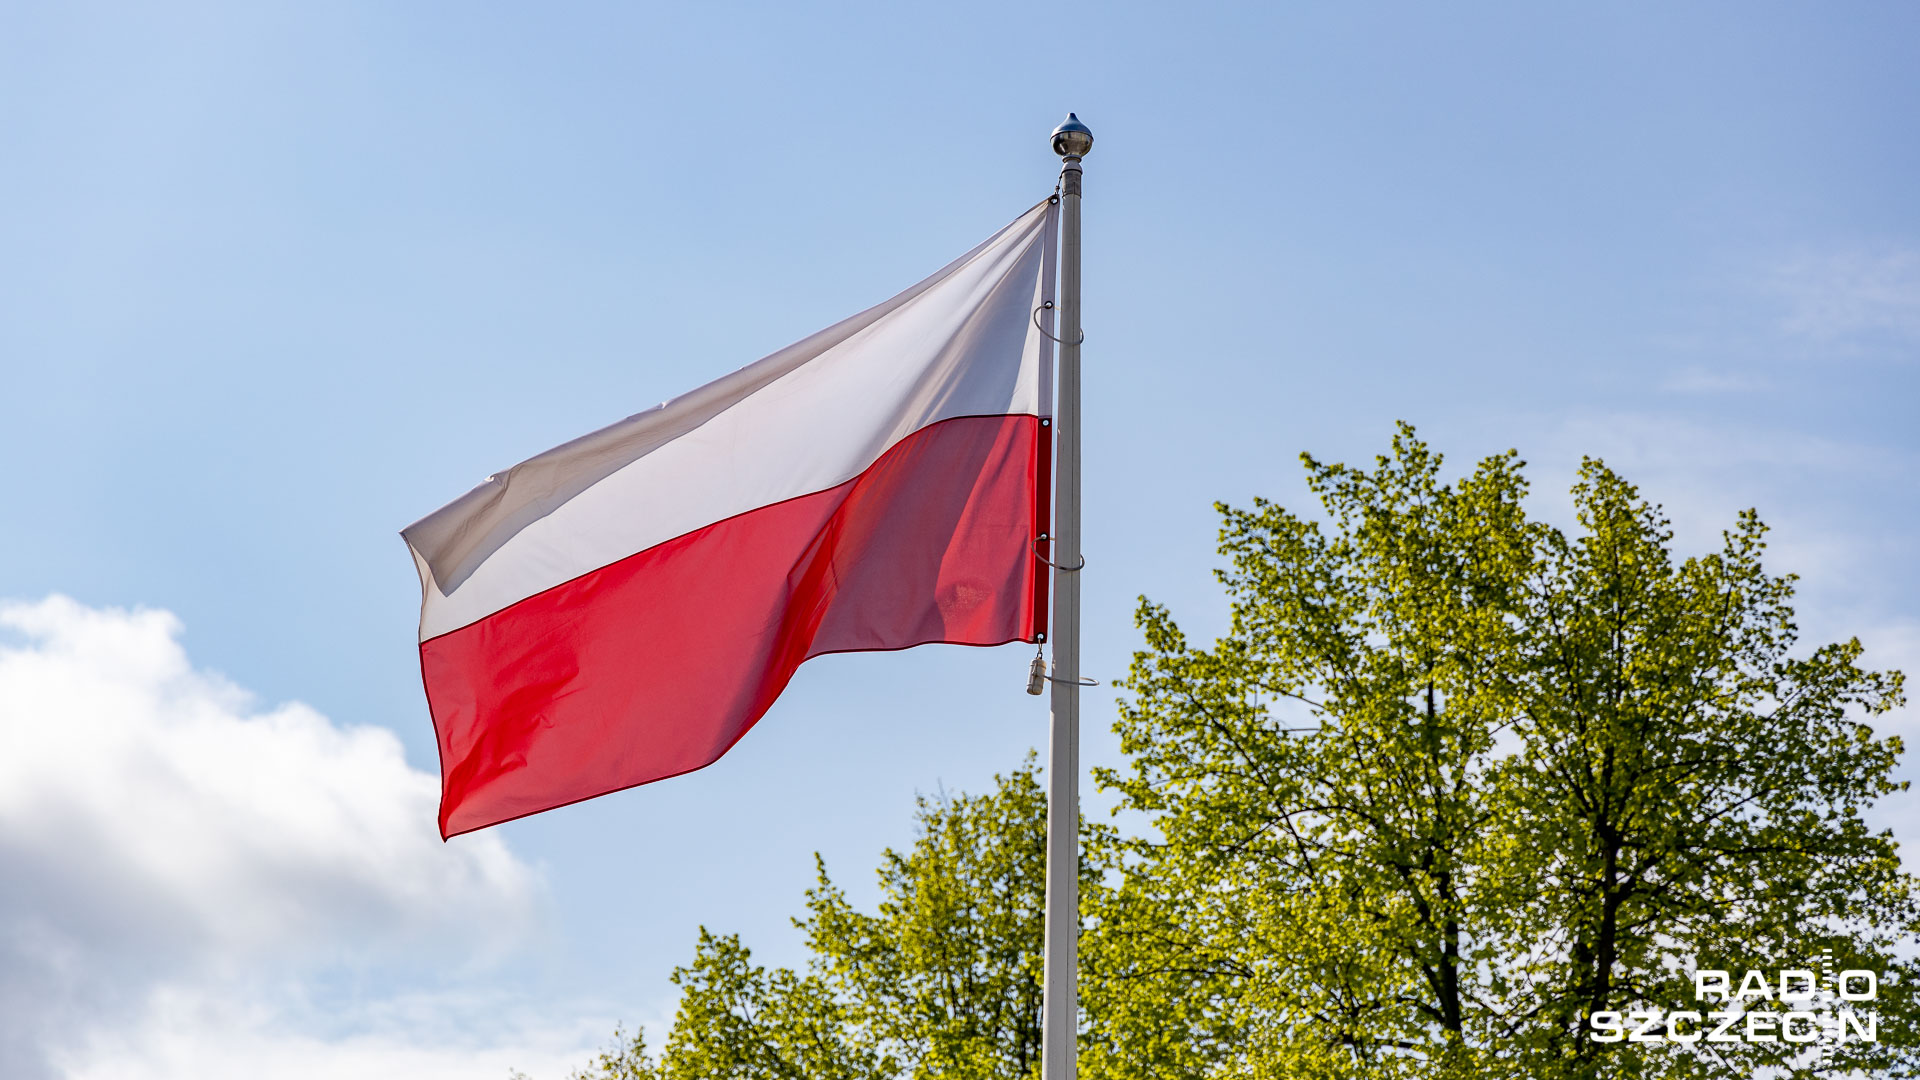 Premierom Polski i państw bałtyckich zostały przyznane nagrody Transatlantyckiego Przywództwa - informuje na swojej stronie internetowej rząd Litwy. Zostaną one wręczone pod koniec miesiąca.